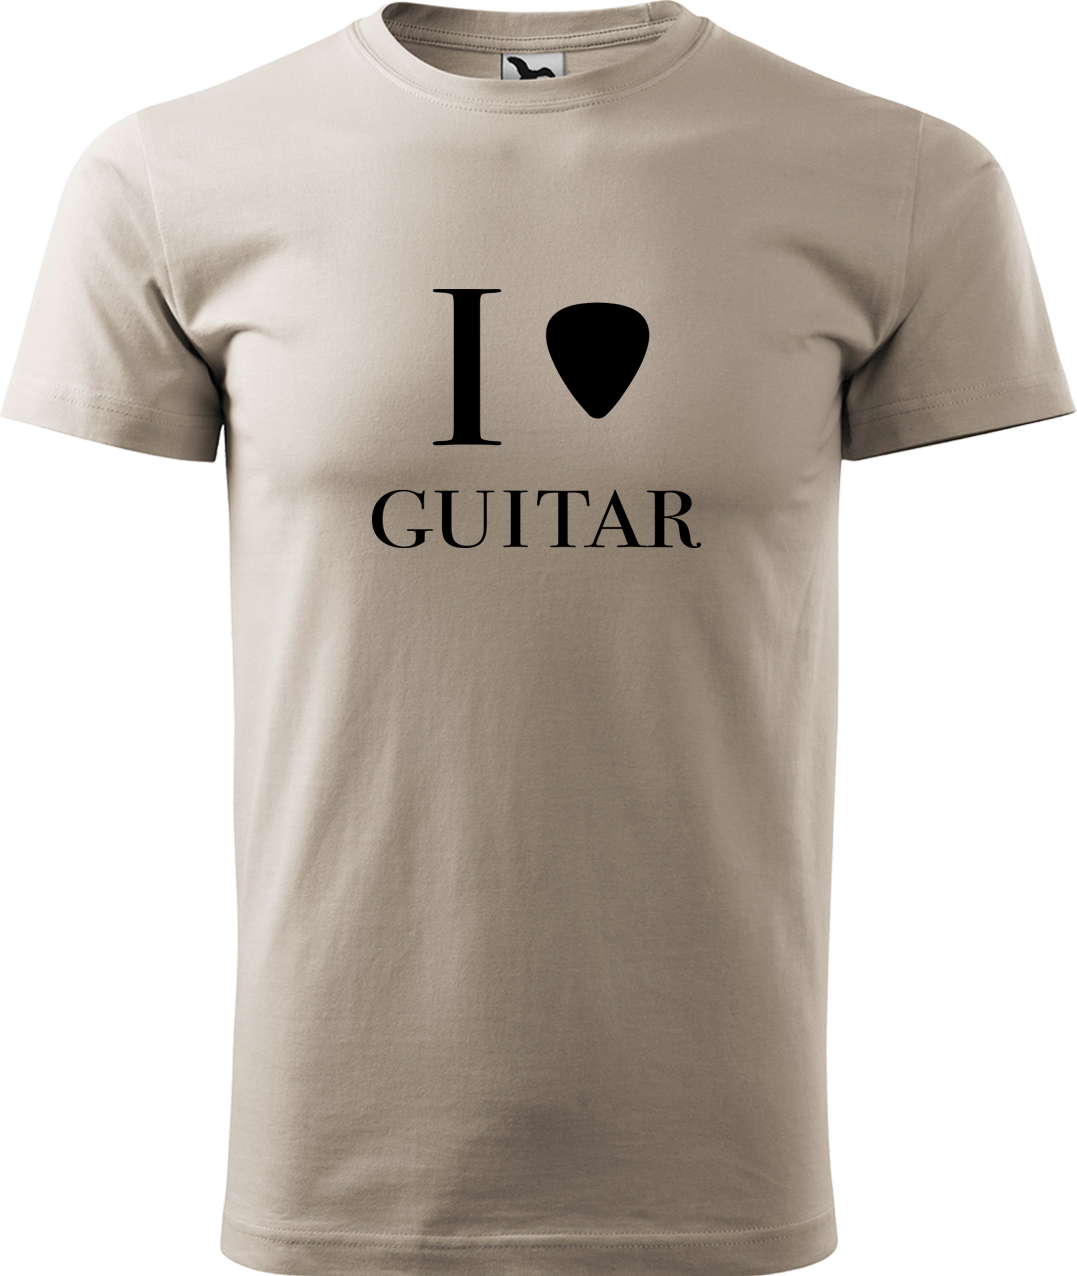 Pánské tričko s kytarou - I love guitar Velikost: XL, Barva: Ledově šedá (51), Střih: pánský